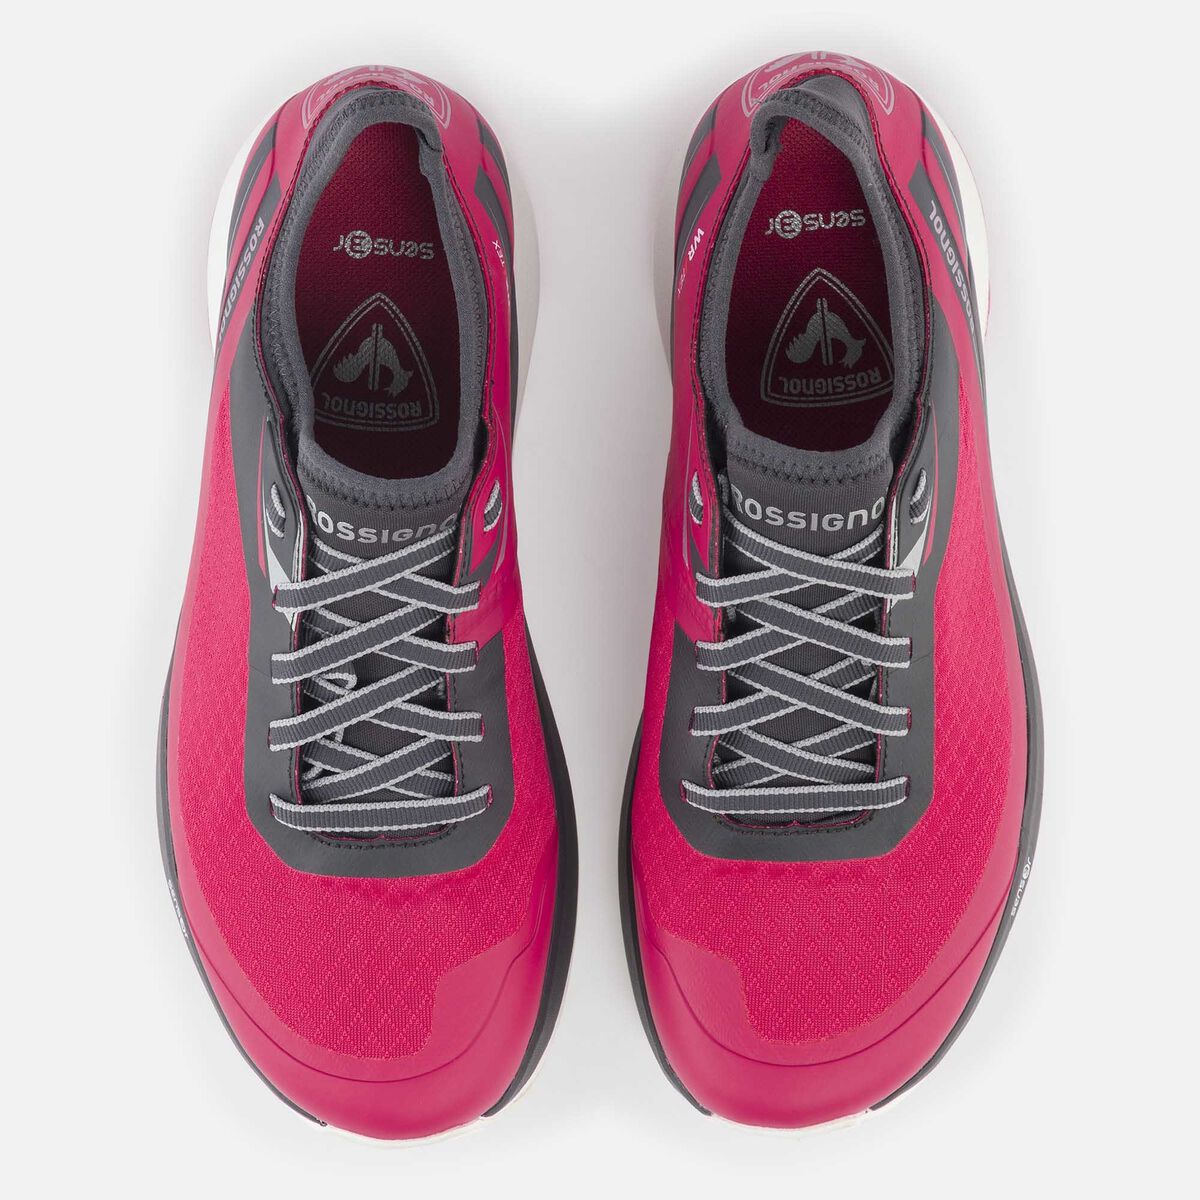 Zapatillas impermeables Active outdoor de color rosa para mujer